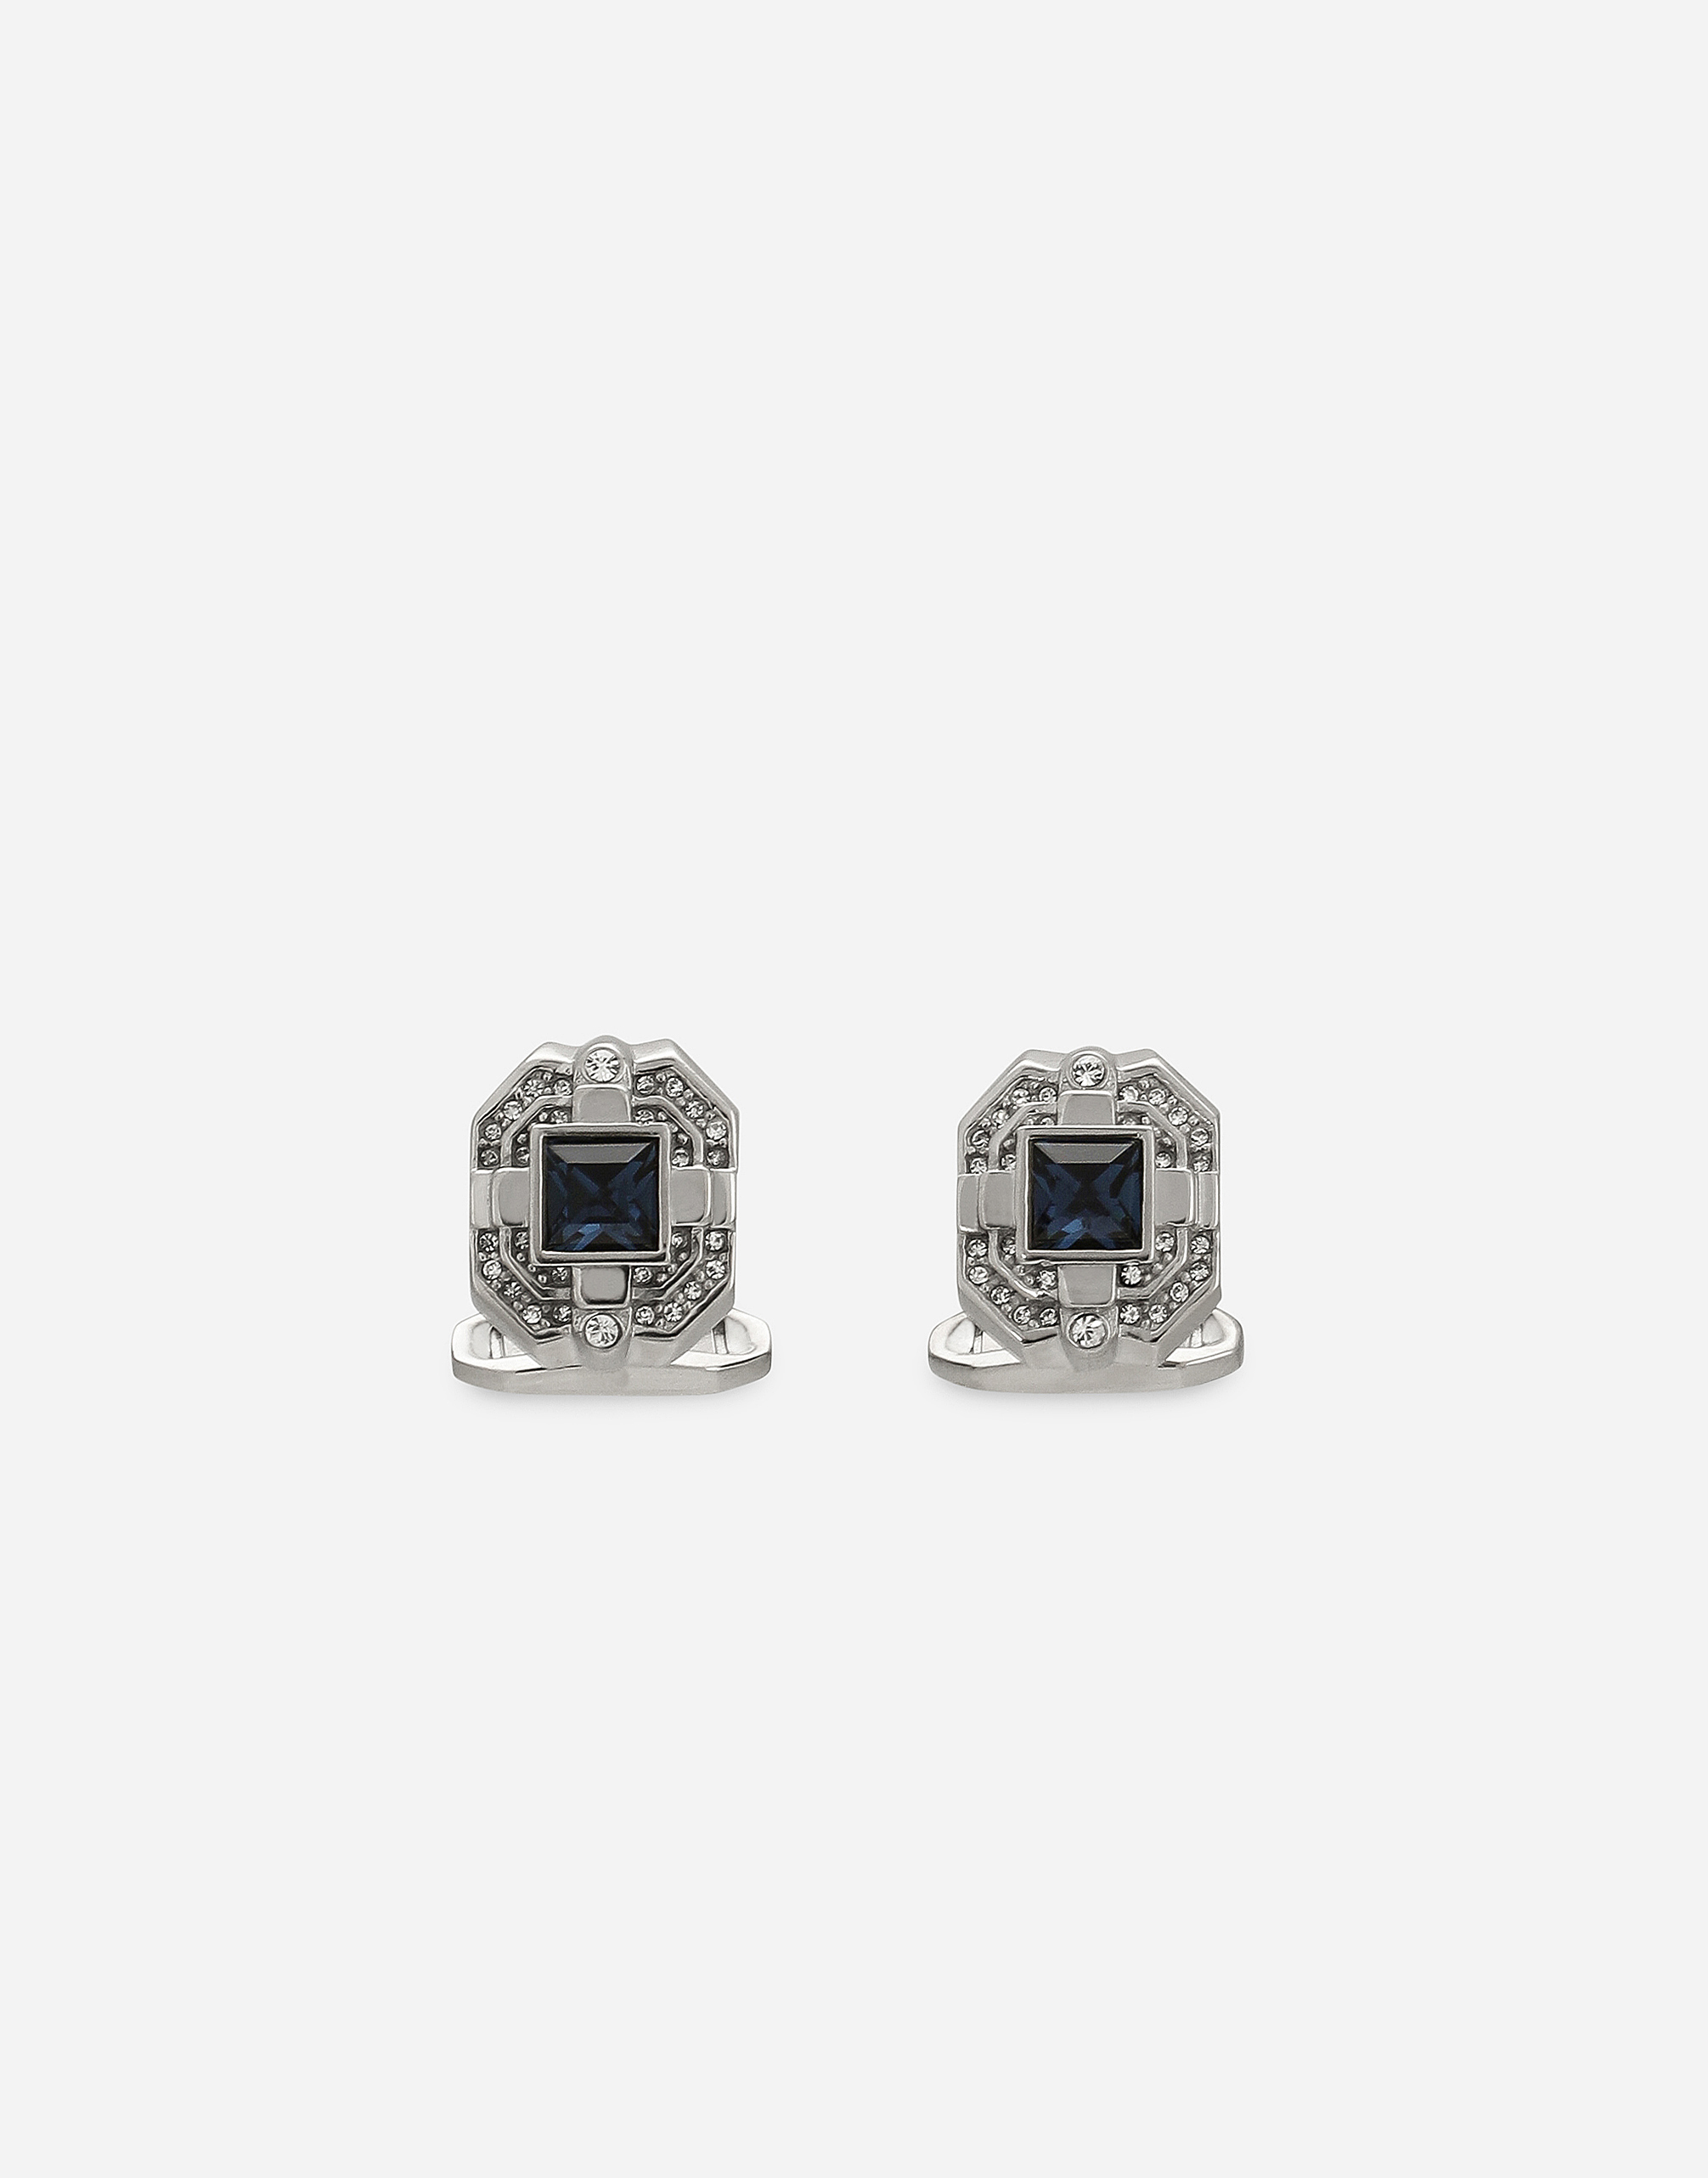 Dolce&Gabbana Silver cufflinks with crystal rhinestones